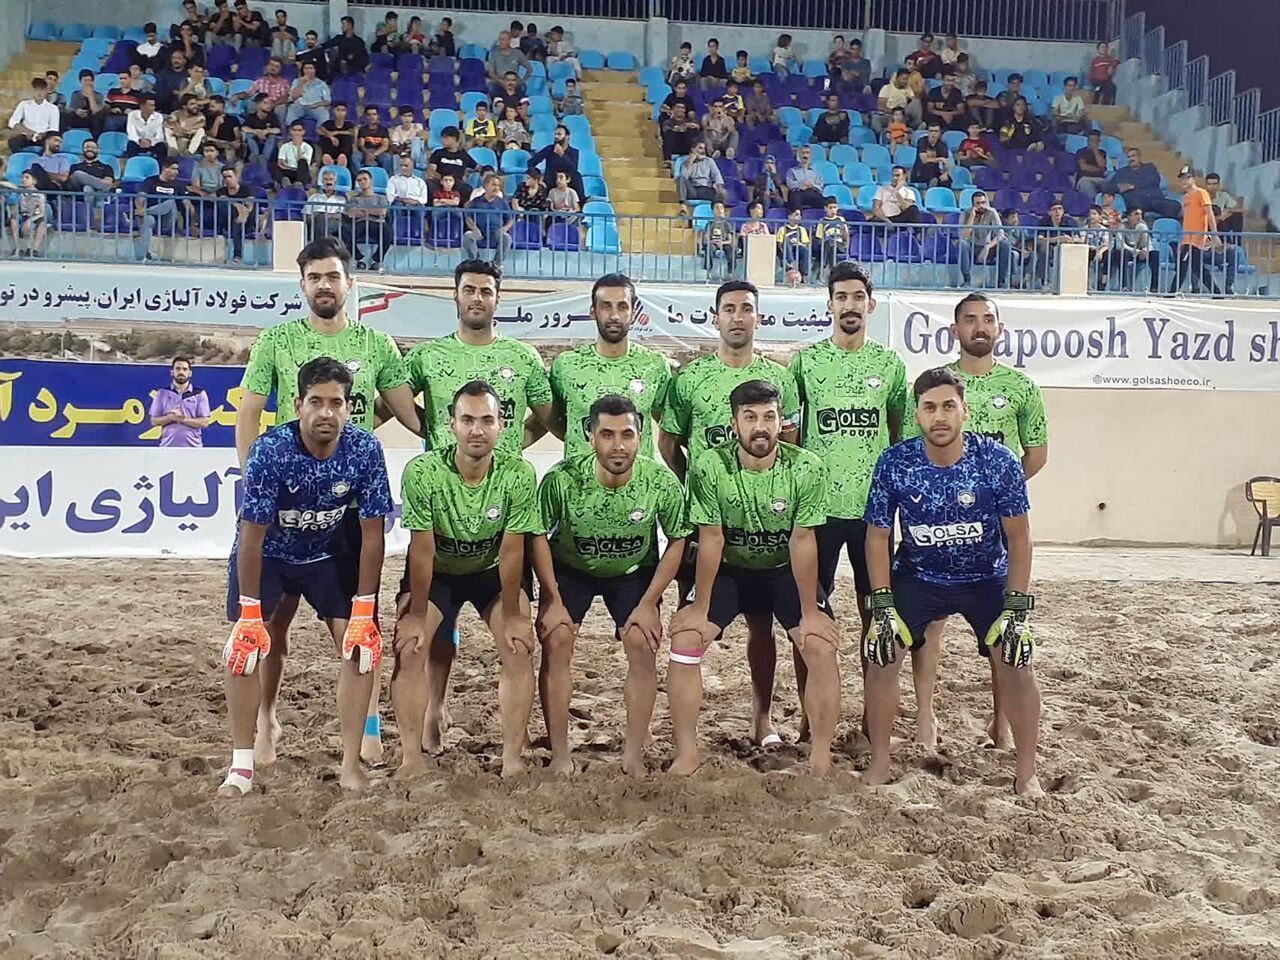 تیم فوتبال ساحلی گلساپوش یزد بر چادرملو اردکان غلبه کرد